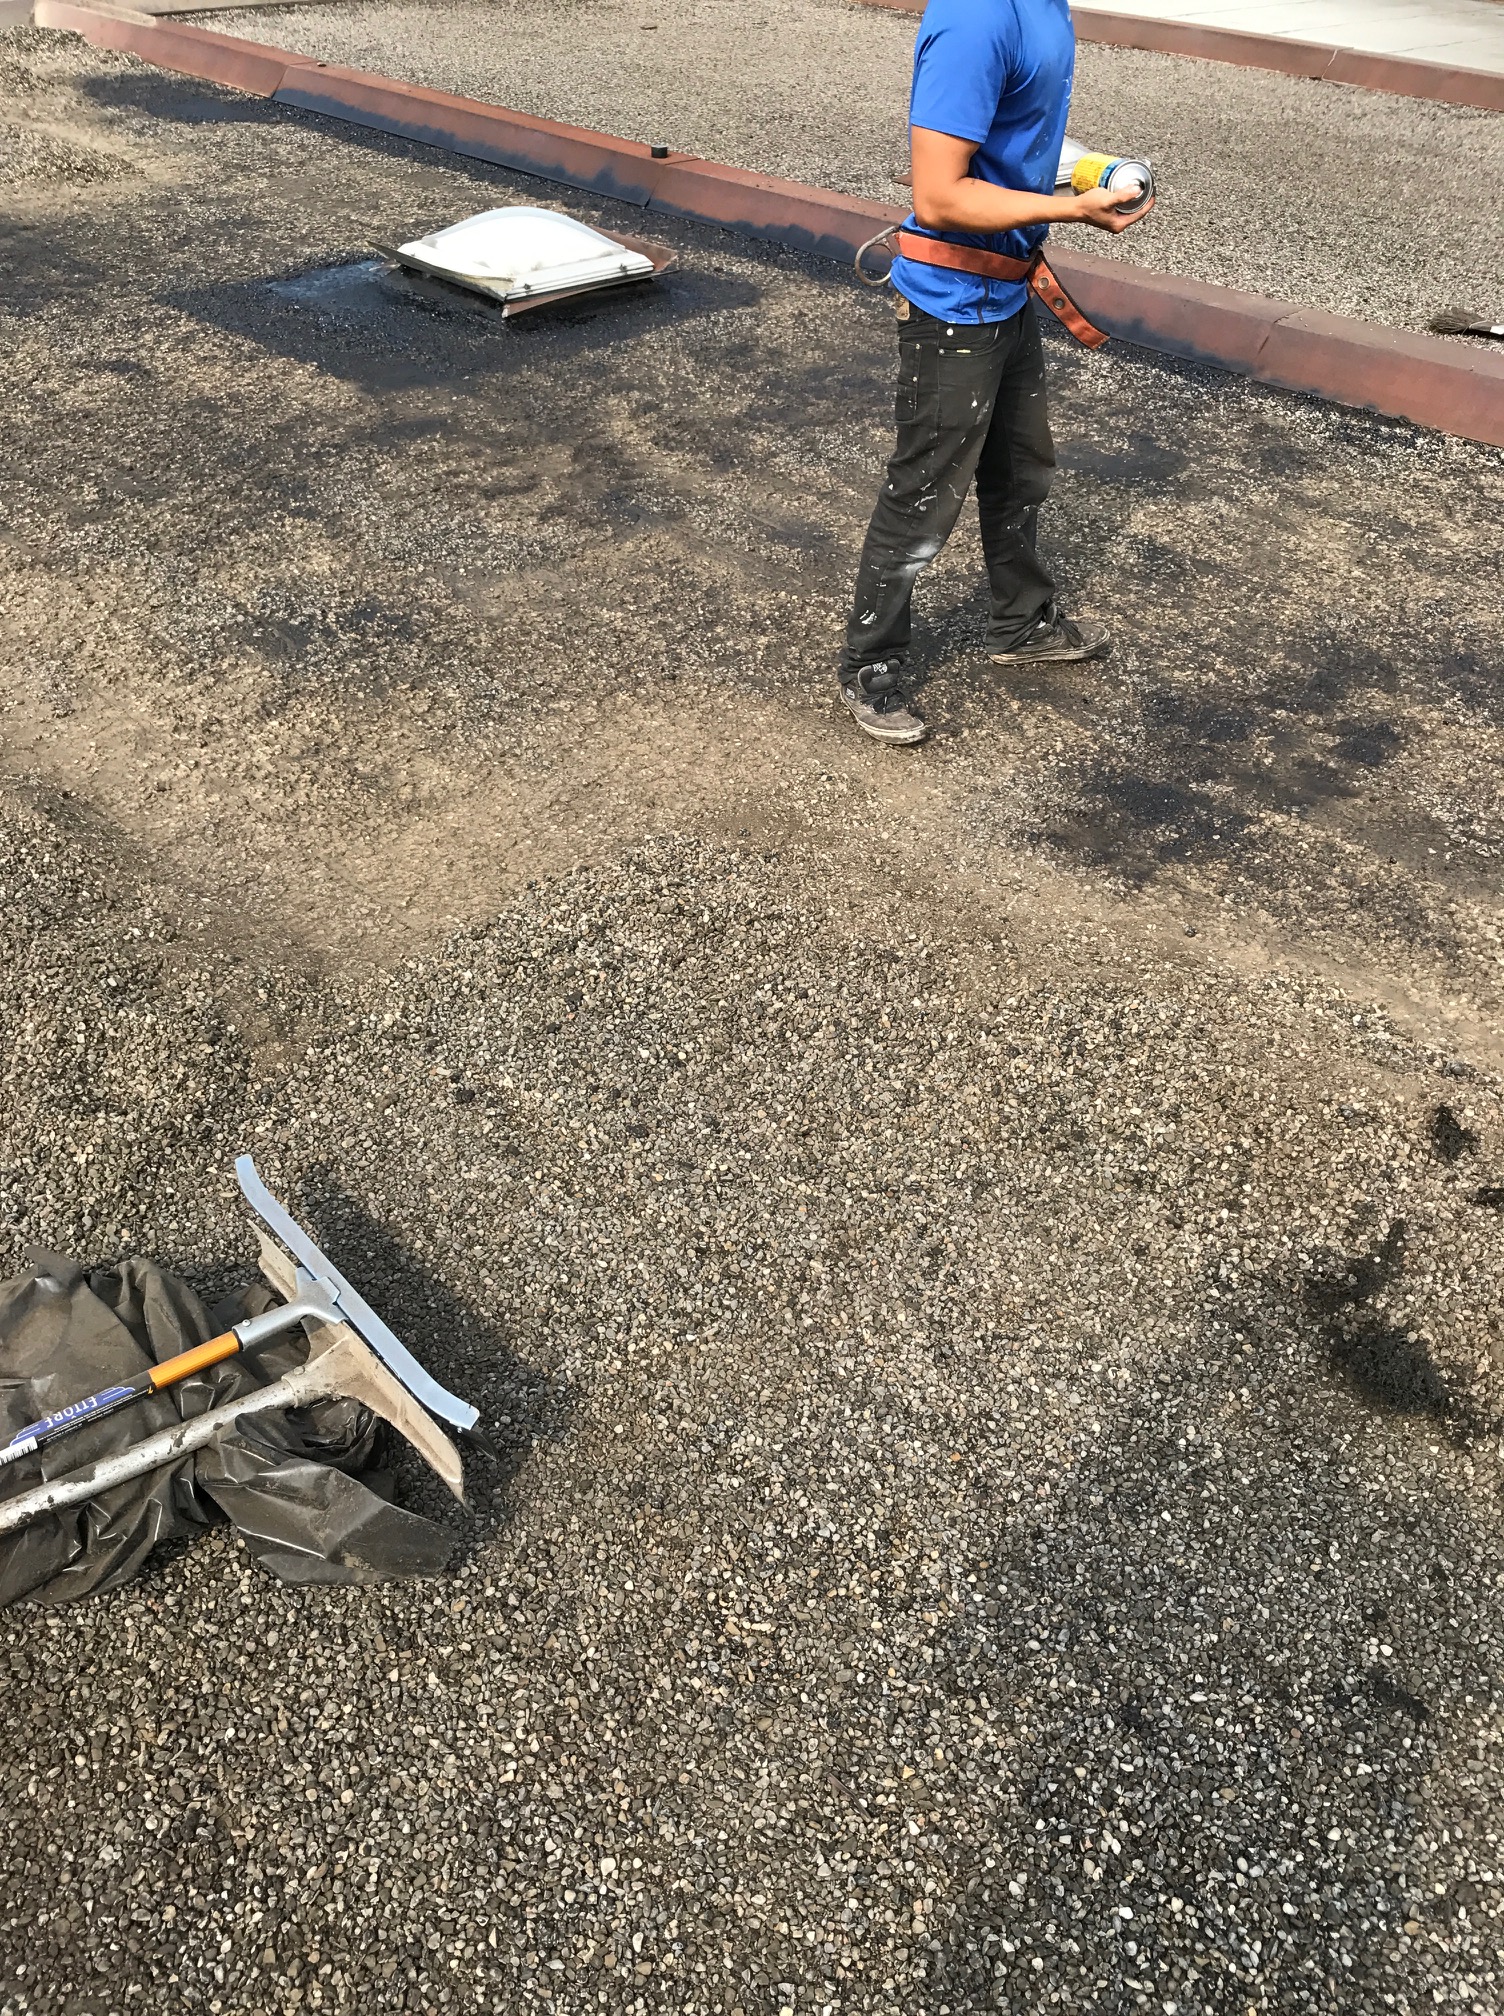 Tar and gravel roof repair Toronto